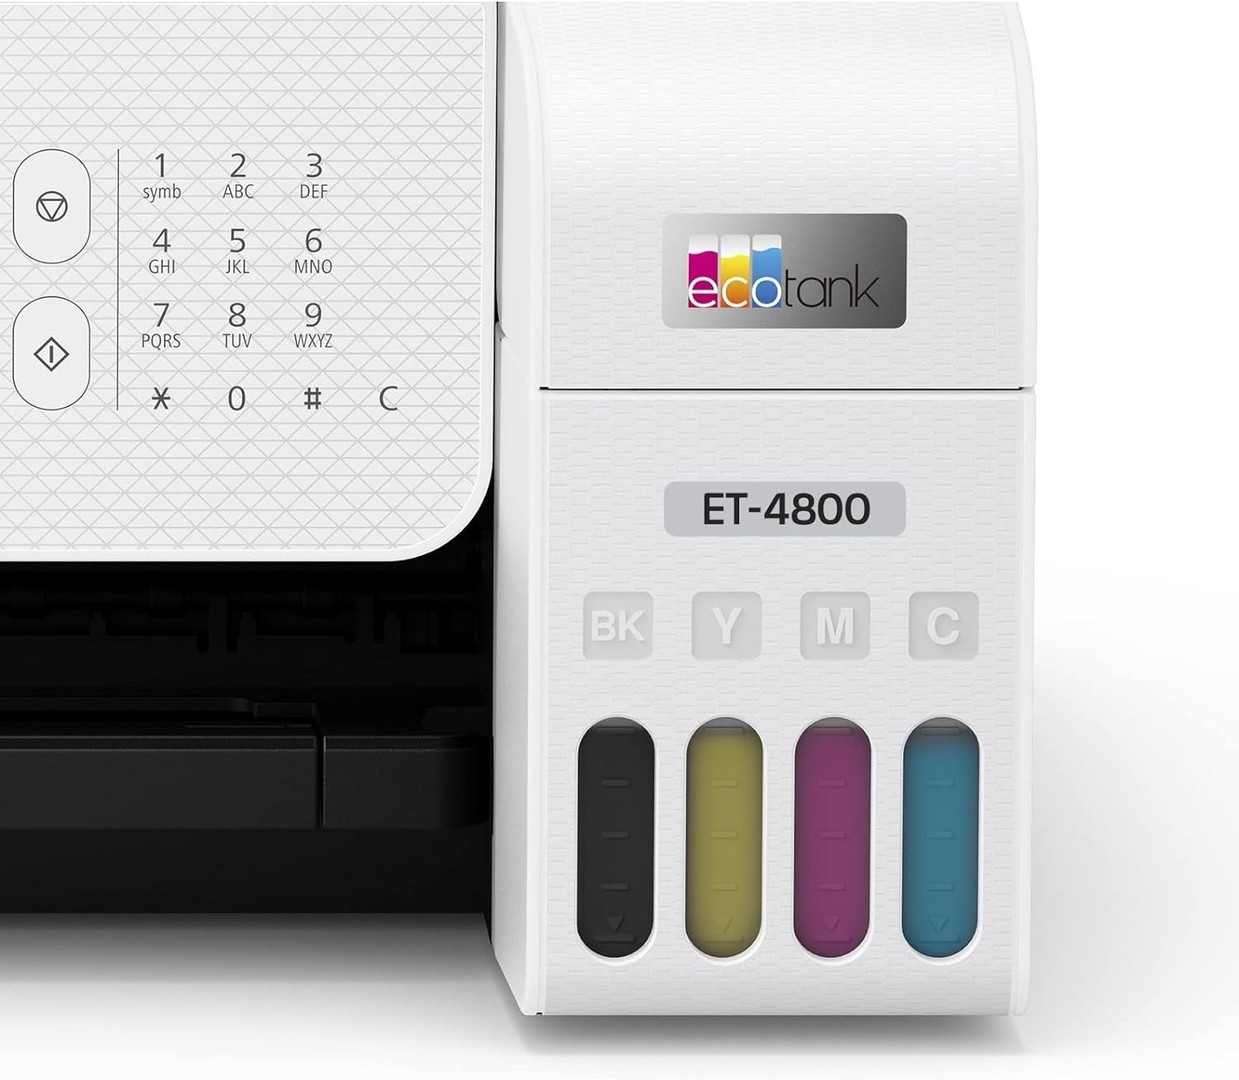 impresoras y scanners - Epson EcoTank ET-4800 Impresora Multifuncional, ADF y Fax, WIFI, USB, Enthernet 5